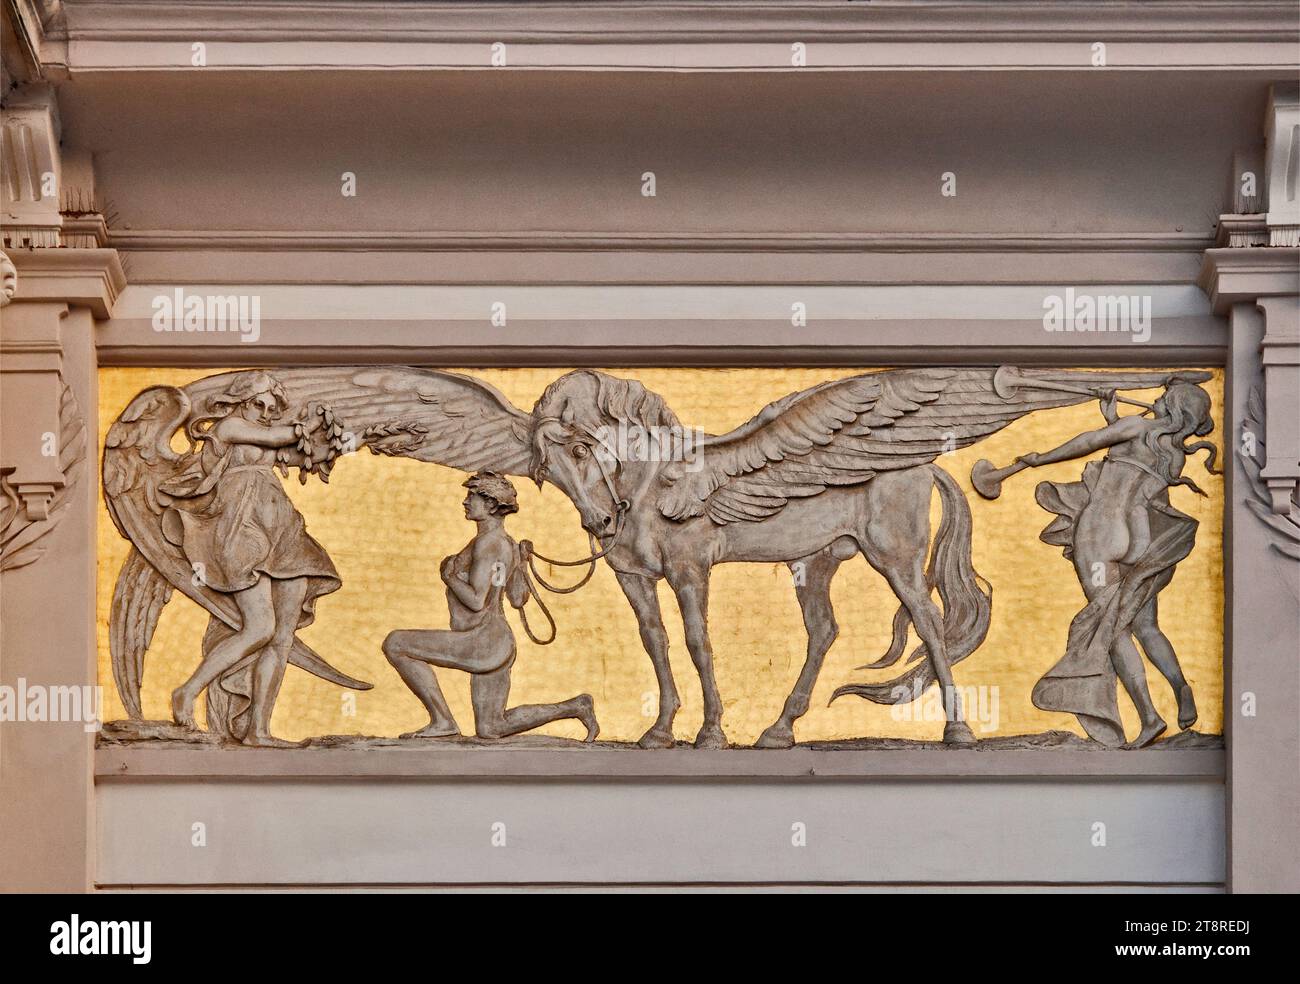 Panel de bajo relieve Art Nouveau, diseñado por Jacek Malczewski, que muestra al artista ganador, su Pegasus, frente a la musa, Palacio de las Artes en Cracovia, Polan Foto de stock